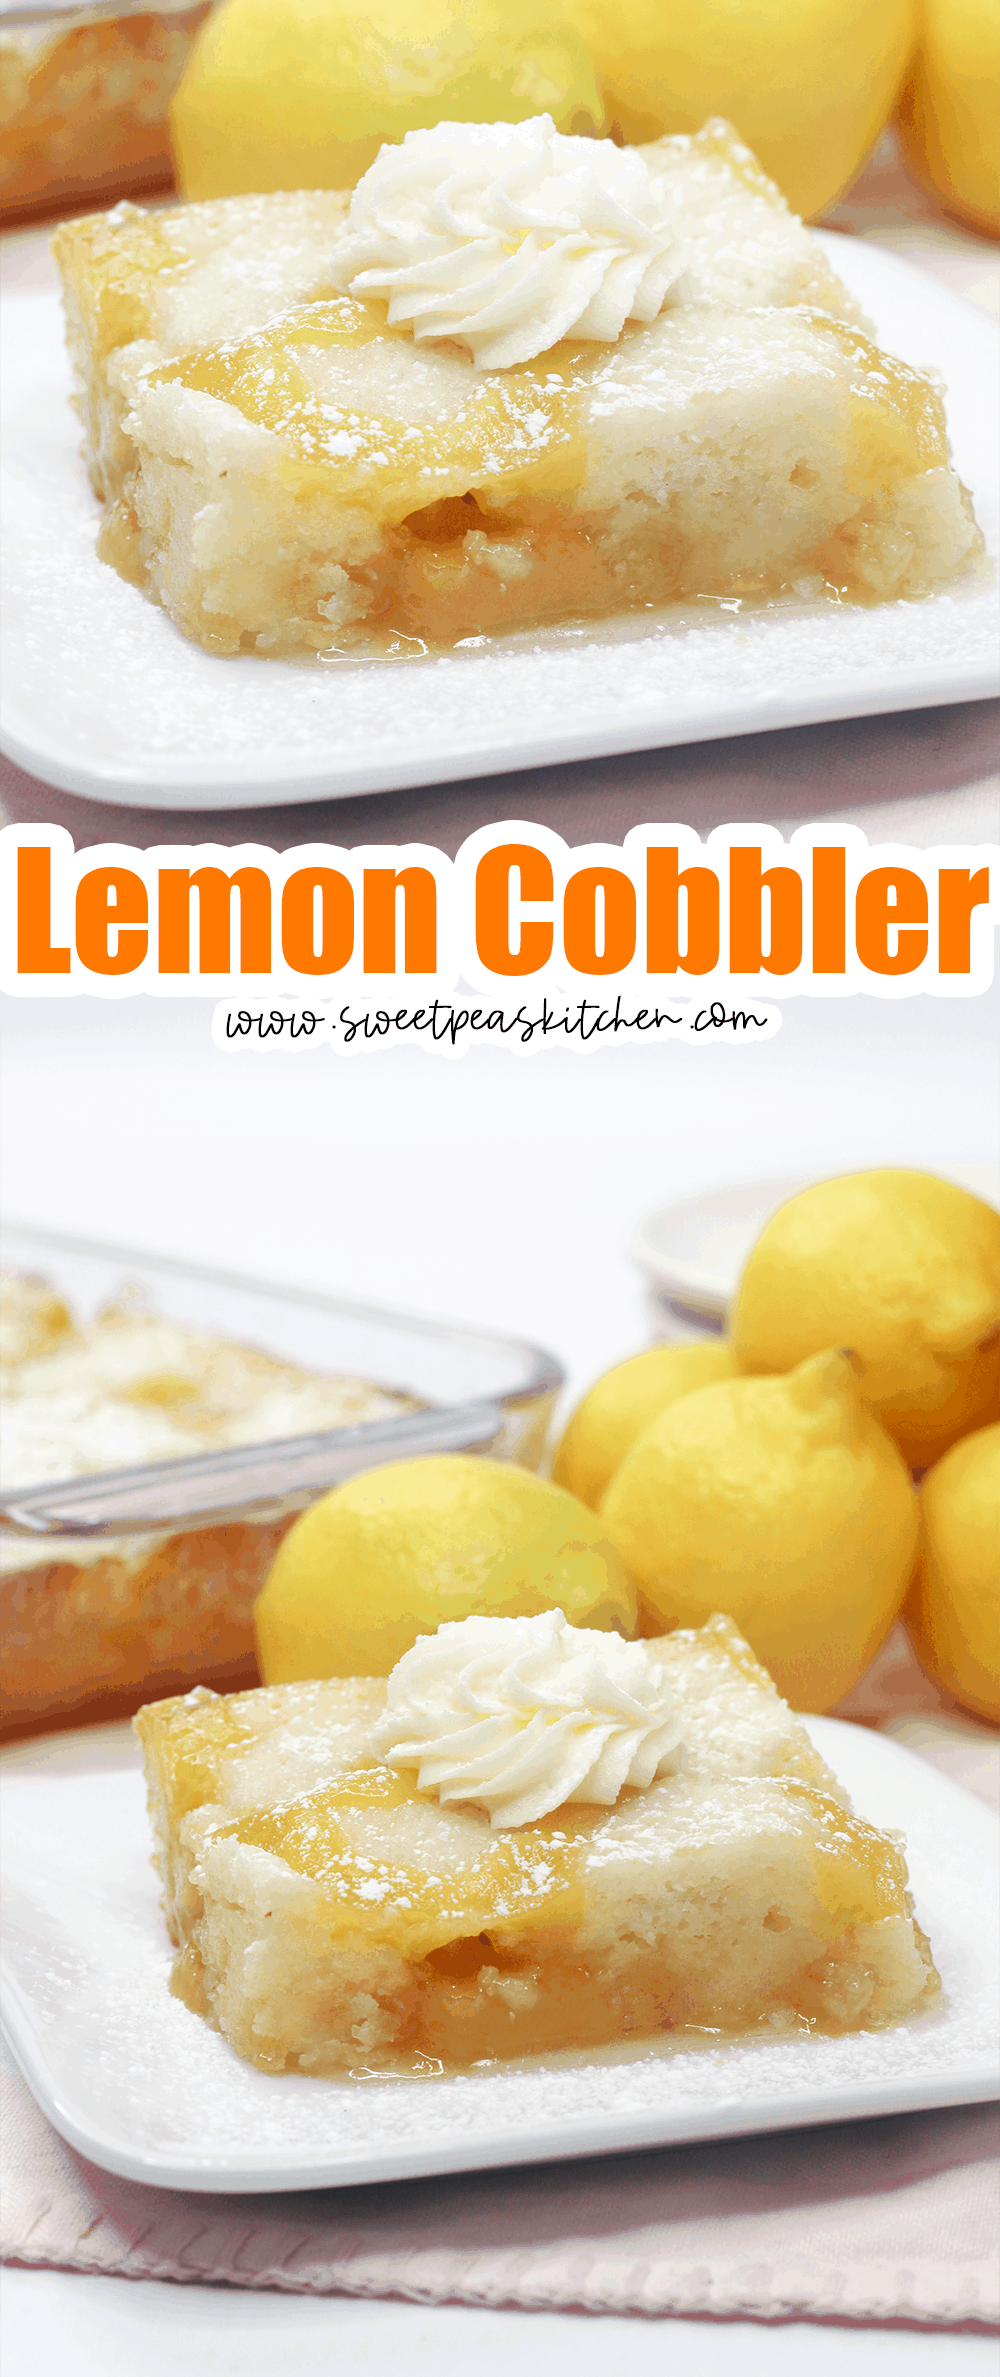 Lemon Cobbler on pinterest